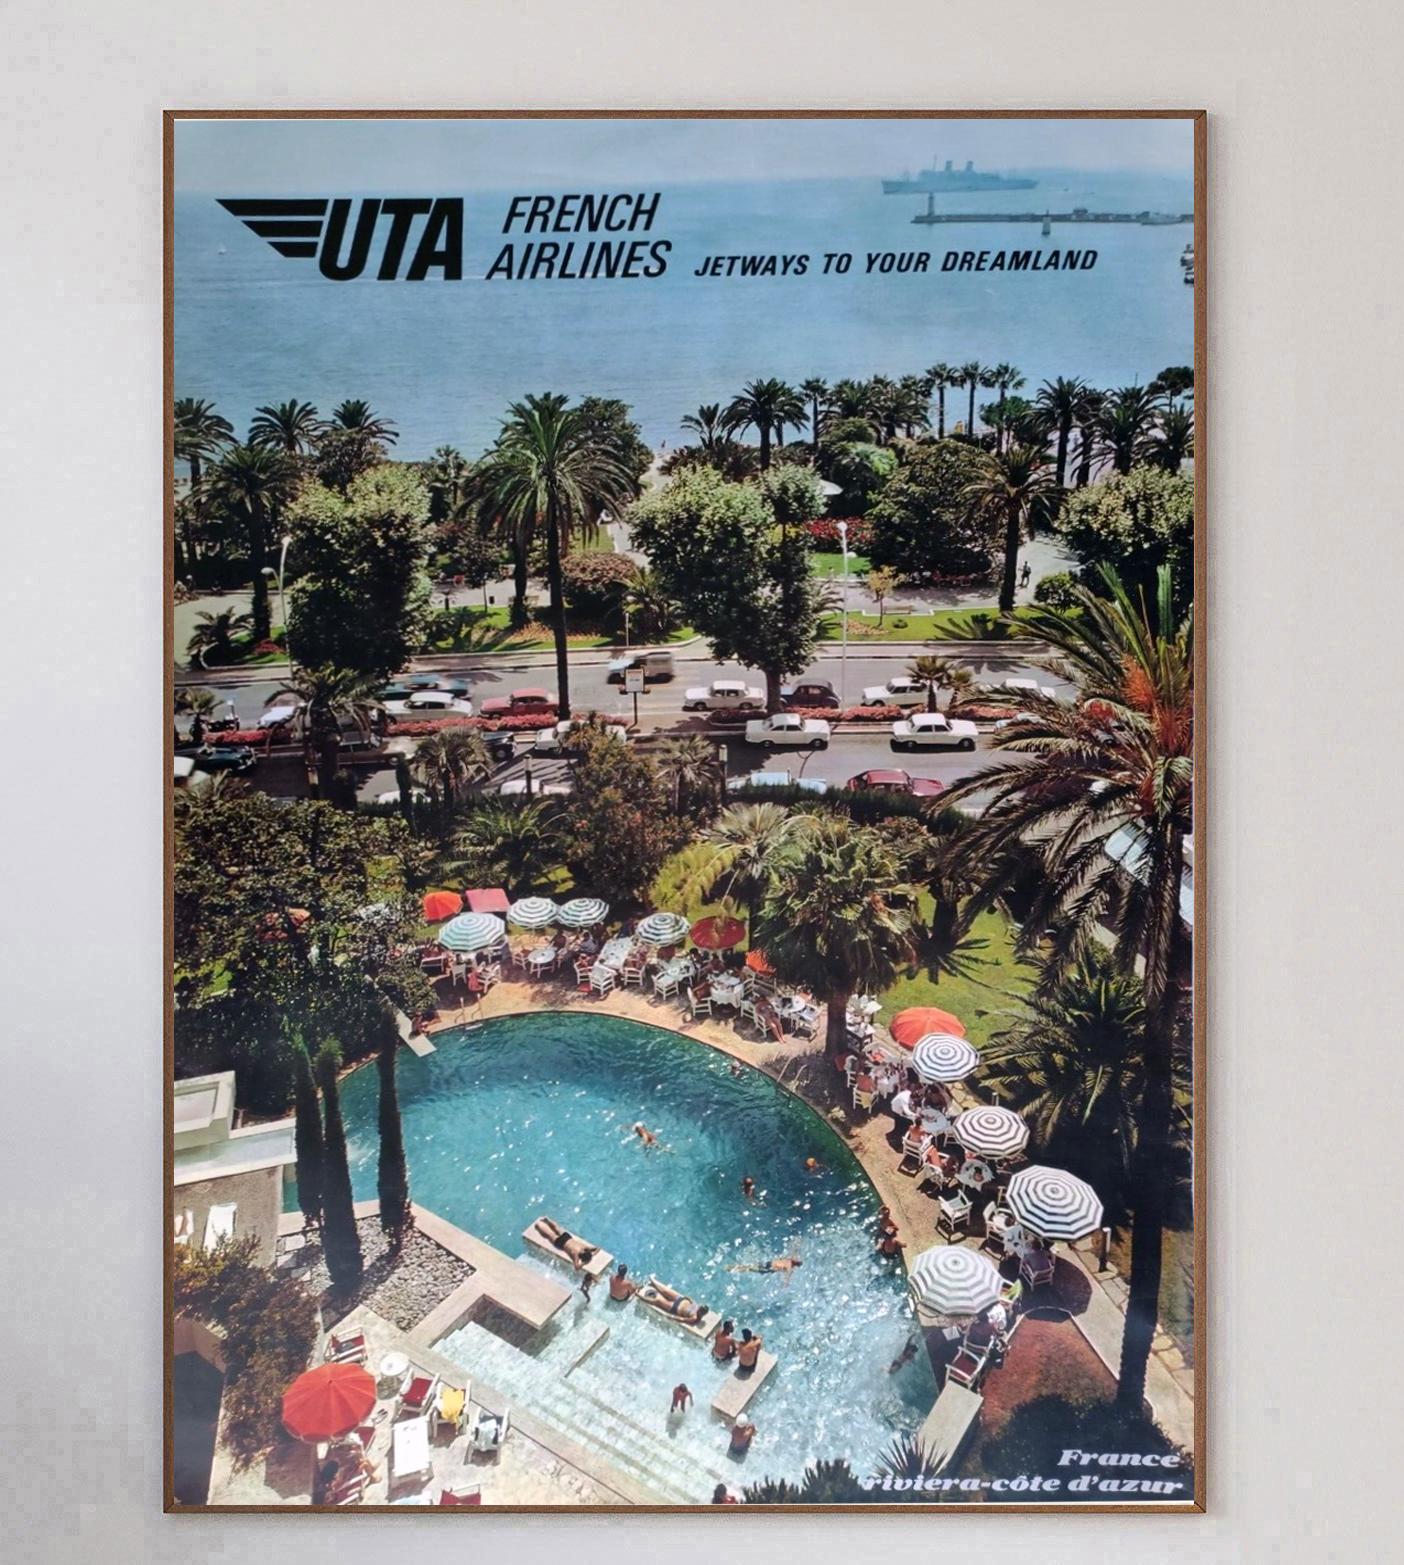 Wunderschönes Plakat, das für die Routen der UTA French Airlines an die französische Riviera Cote d'Azur wirbt. Das 1967 geschaffene Werk zeigt einen schönen Sommertag in Südfrankreich mit einem von Sonnenliegen gesäumten Swimmingpool an der